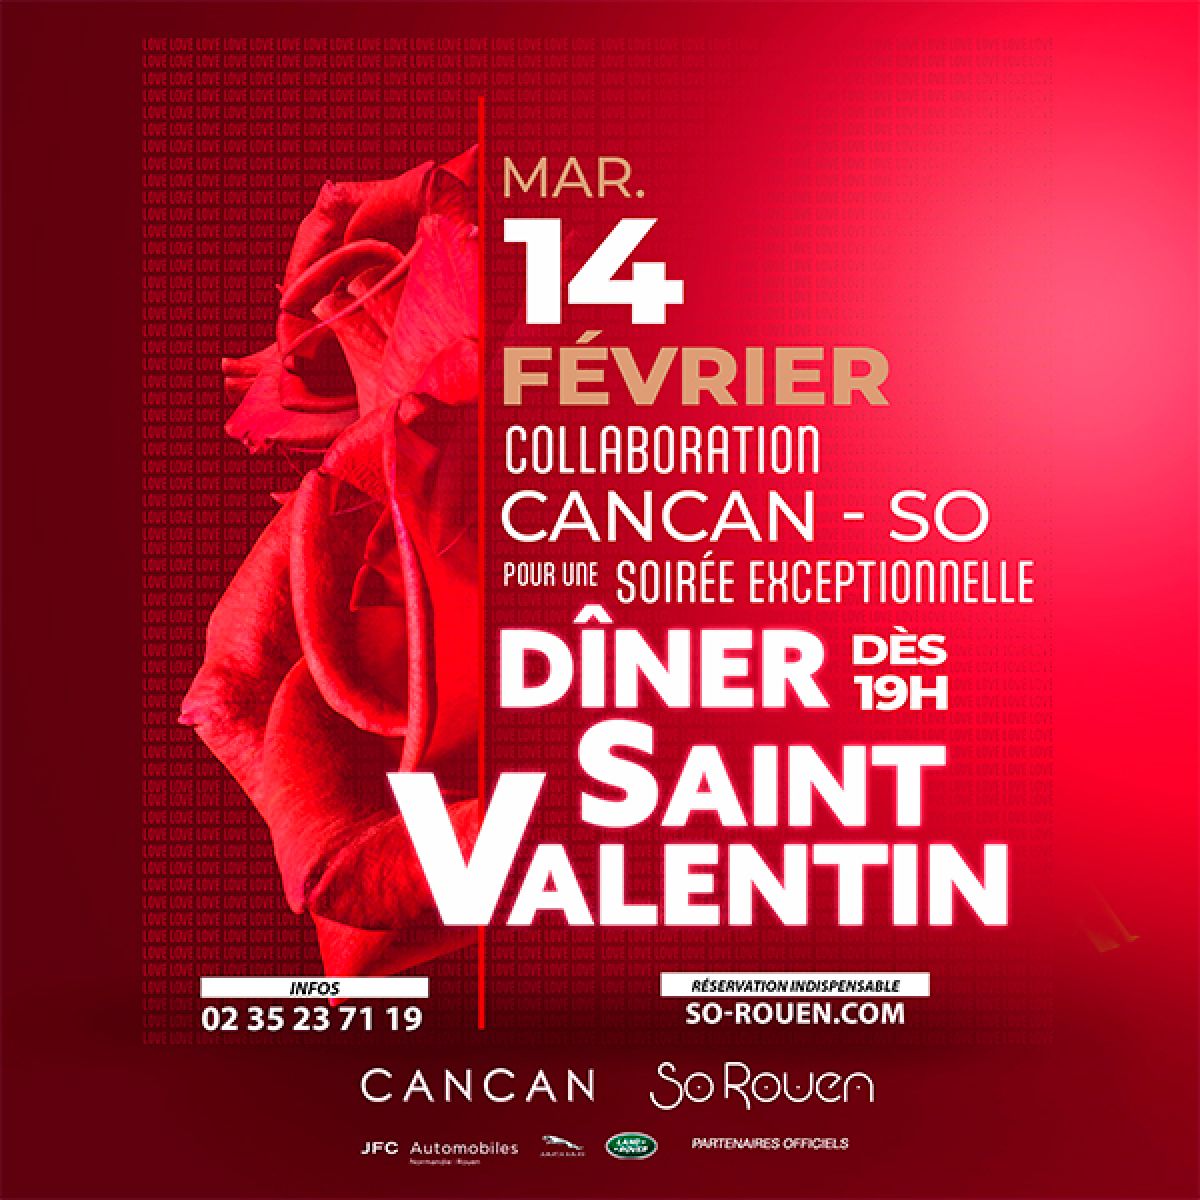 Diner de Saint Valentin - So Rouen x Cancan